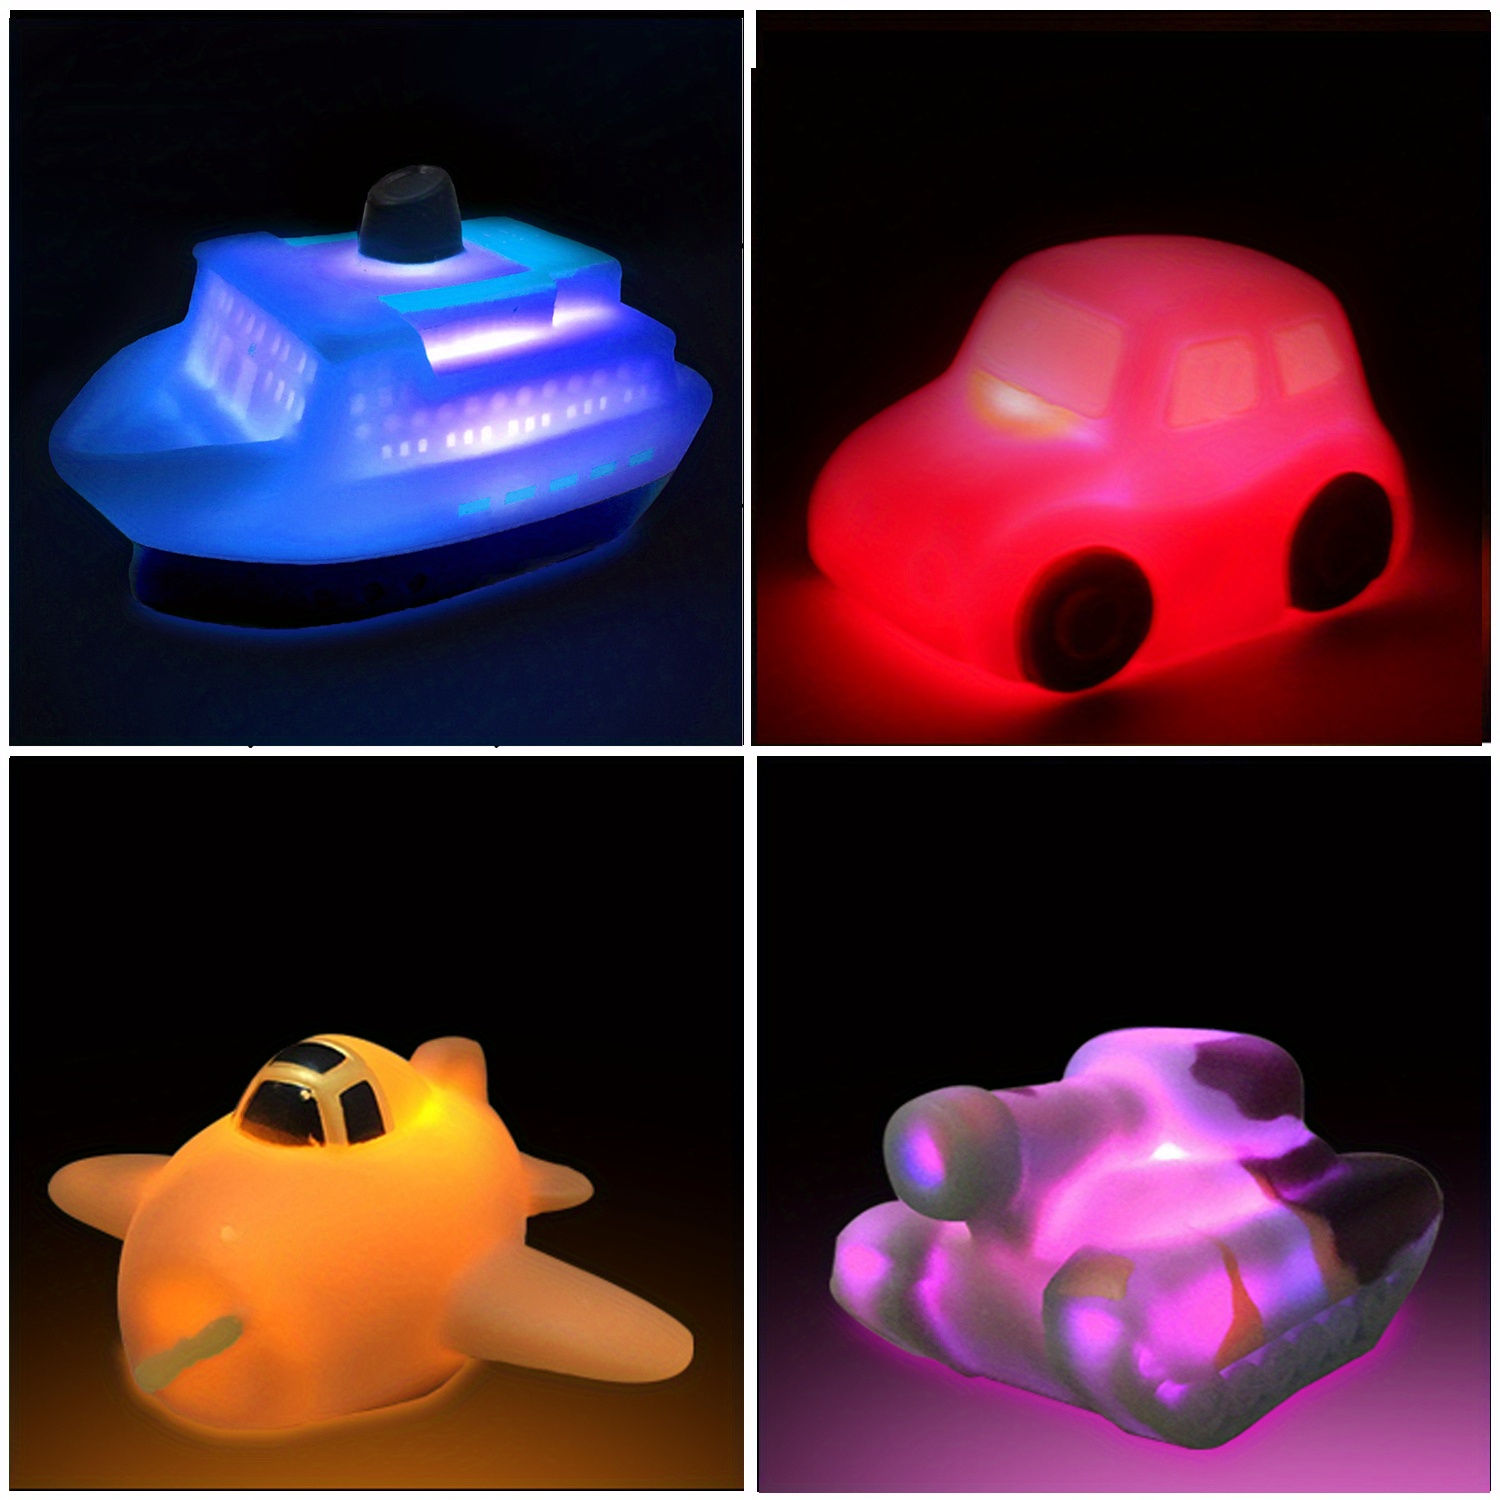 Jouet de bain lumineux en forme d'animaux marins – Mon Petit Ange